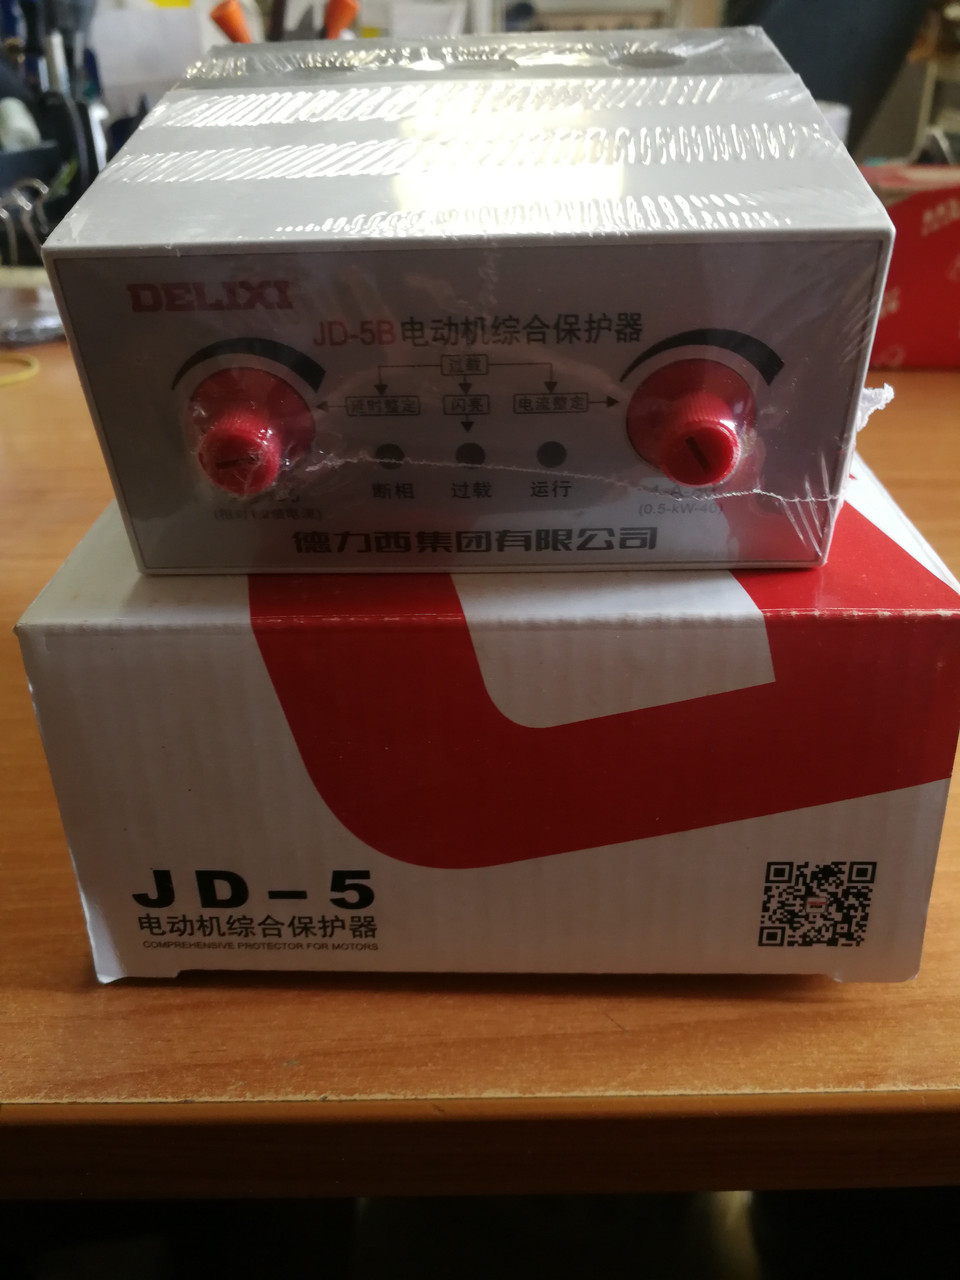 JD-5B